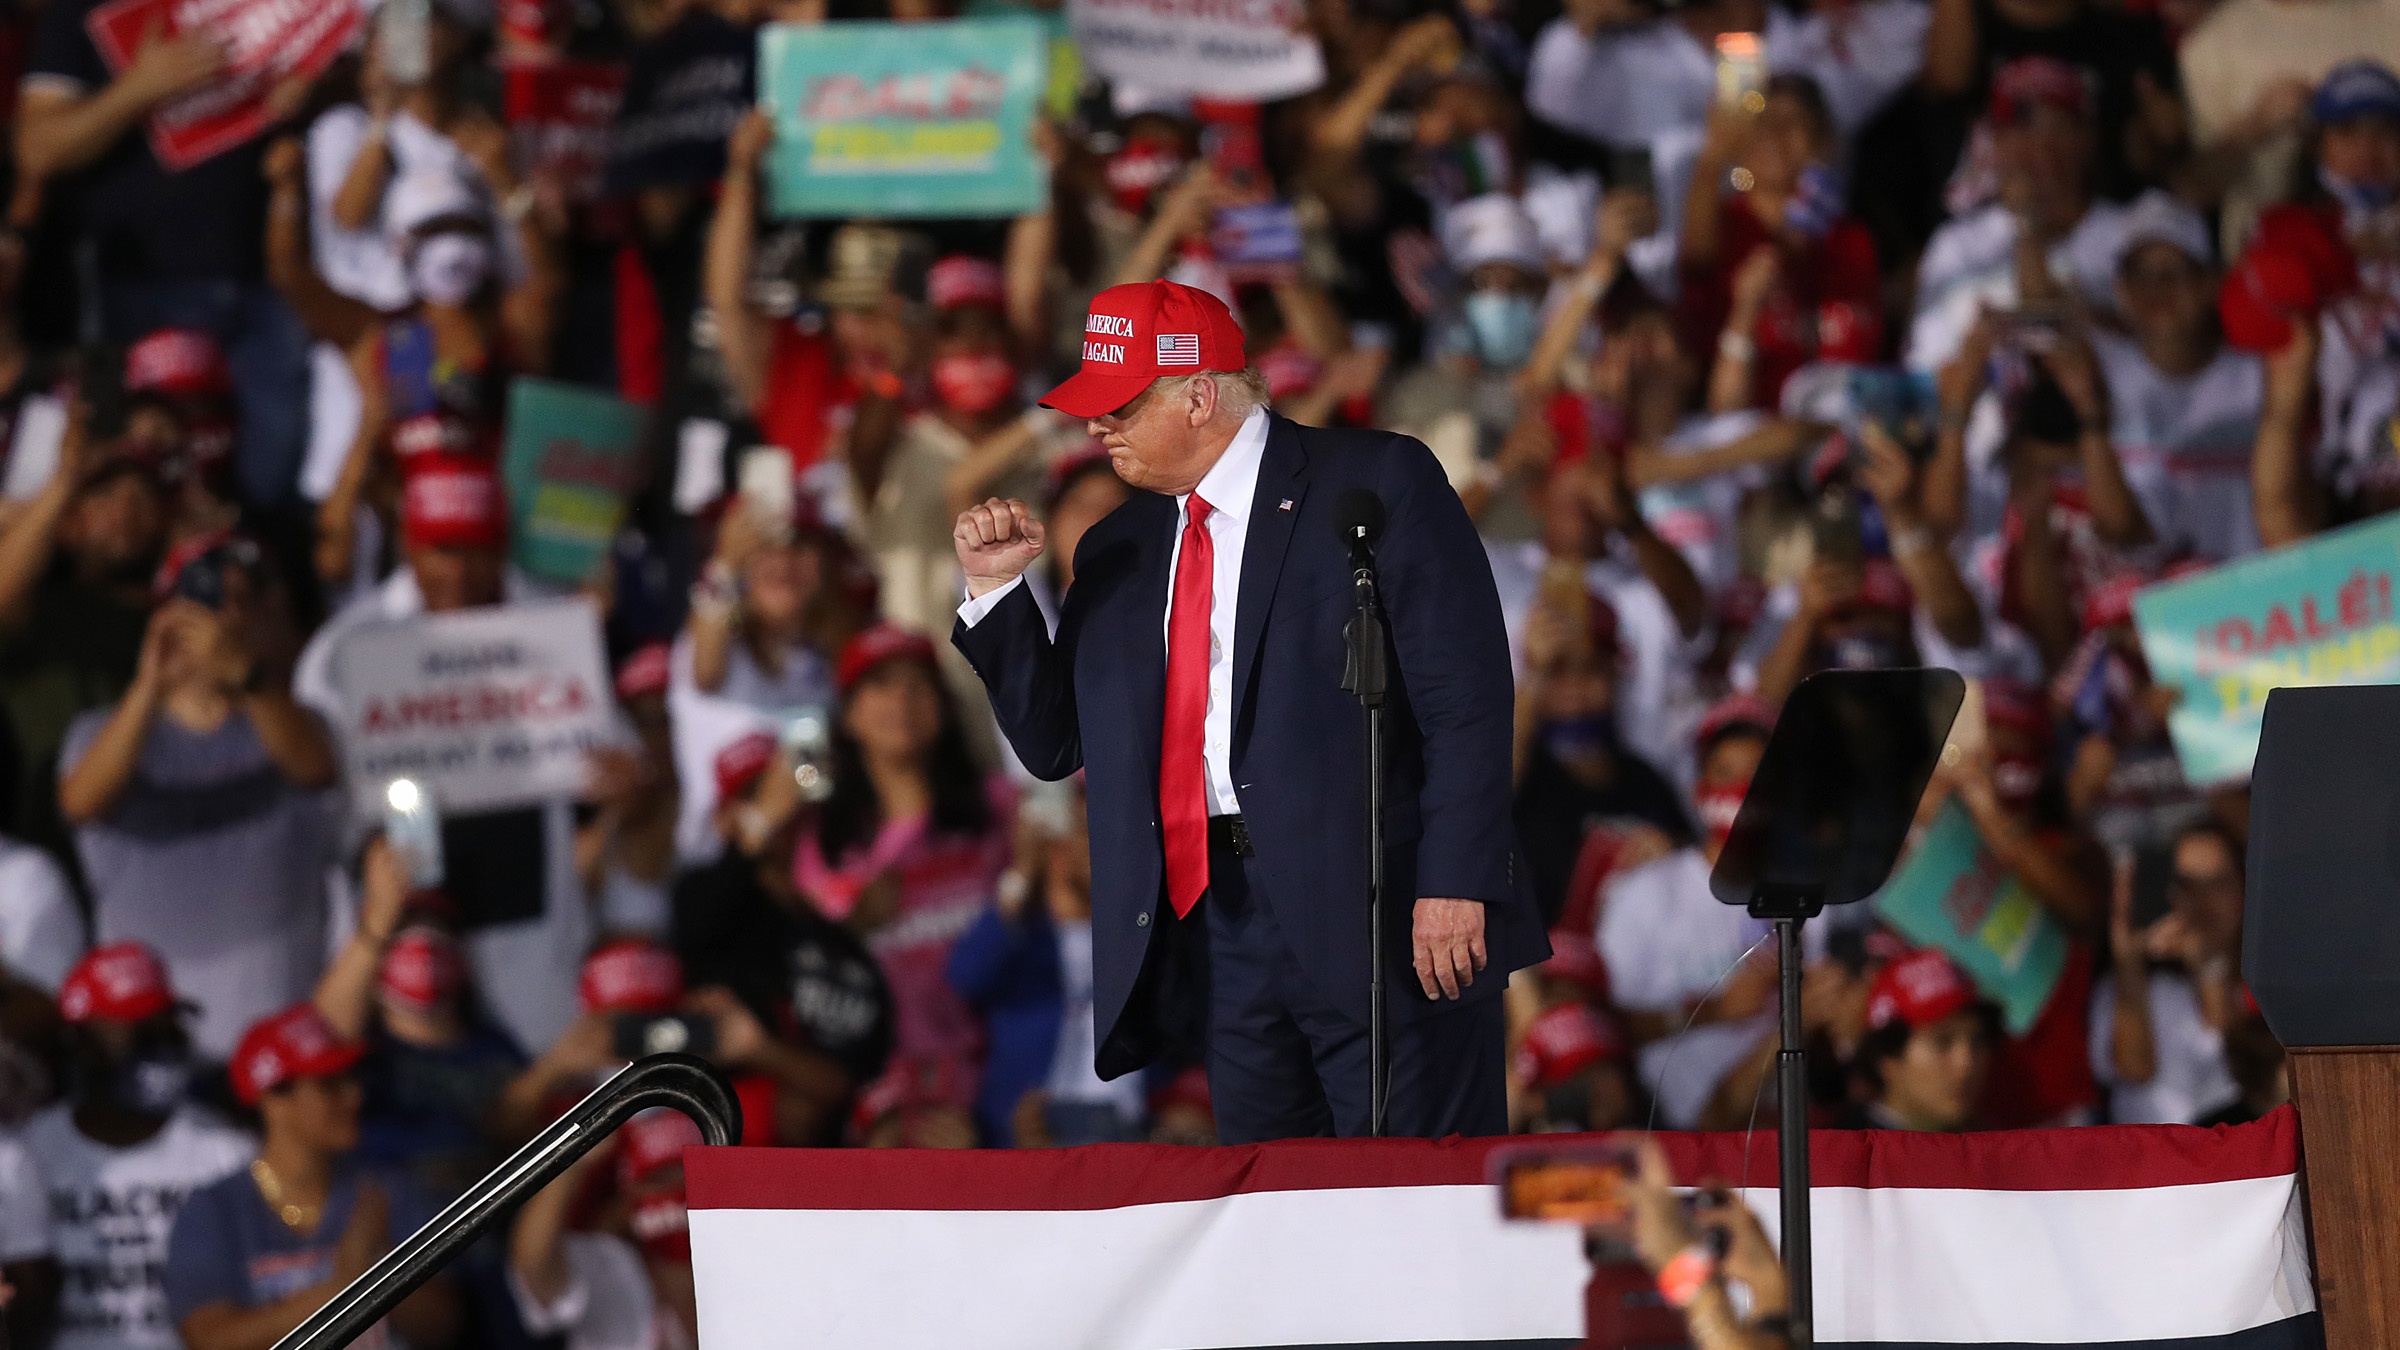 Donald Trump makes a campaign stop in Miami, Florida.